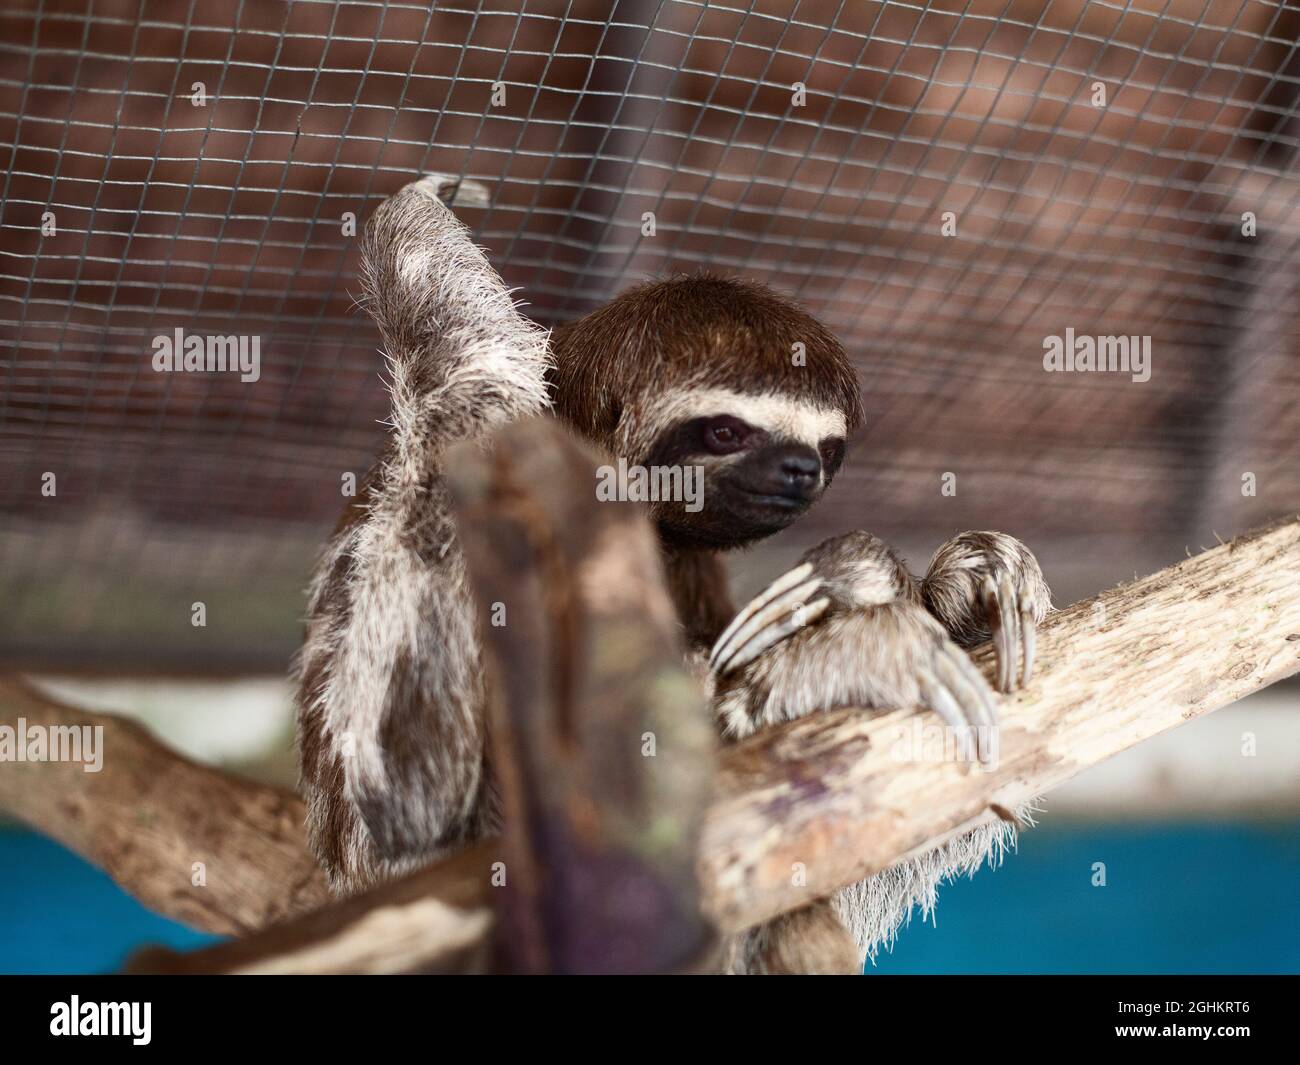 Bradypus variegatus oder Sloth in Gefangenschaft Stockfoto